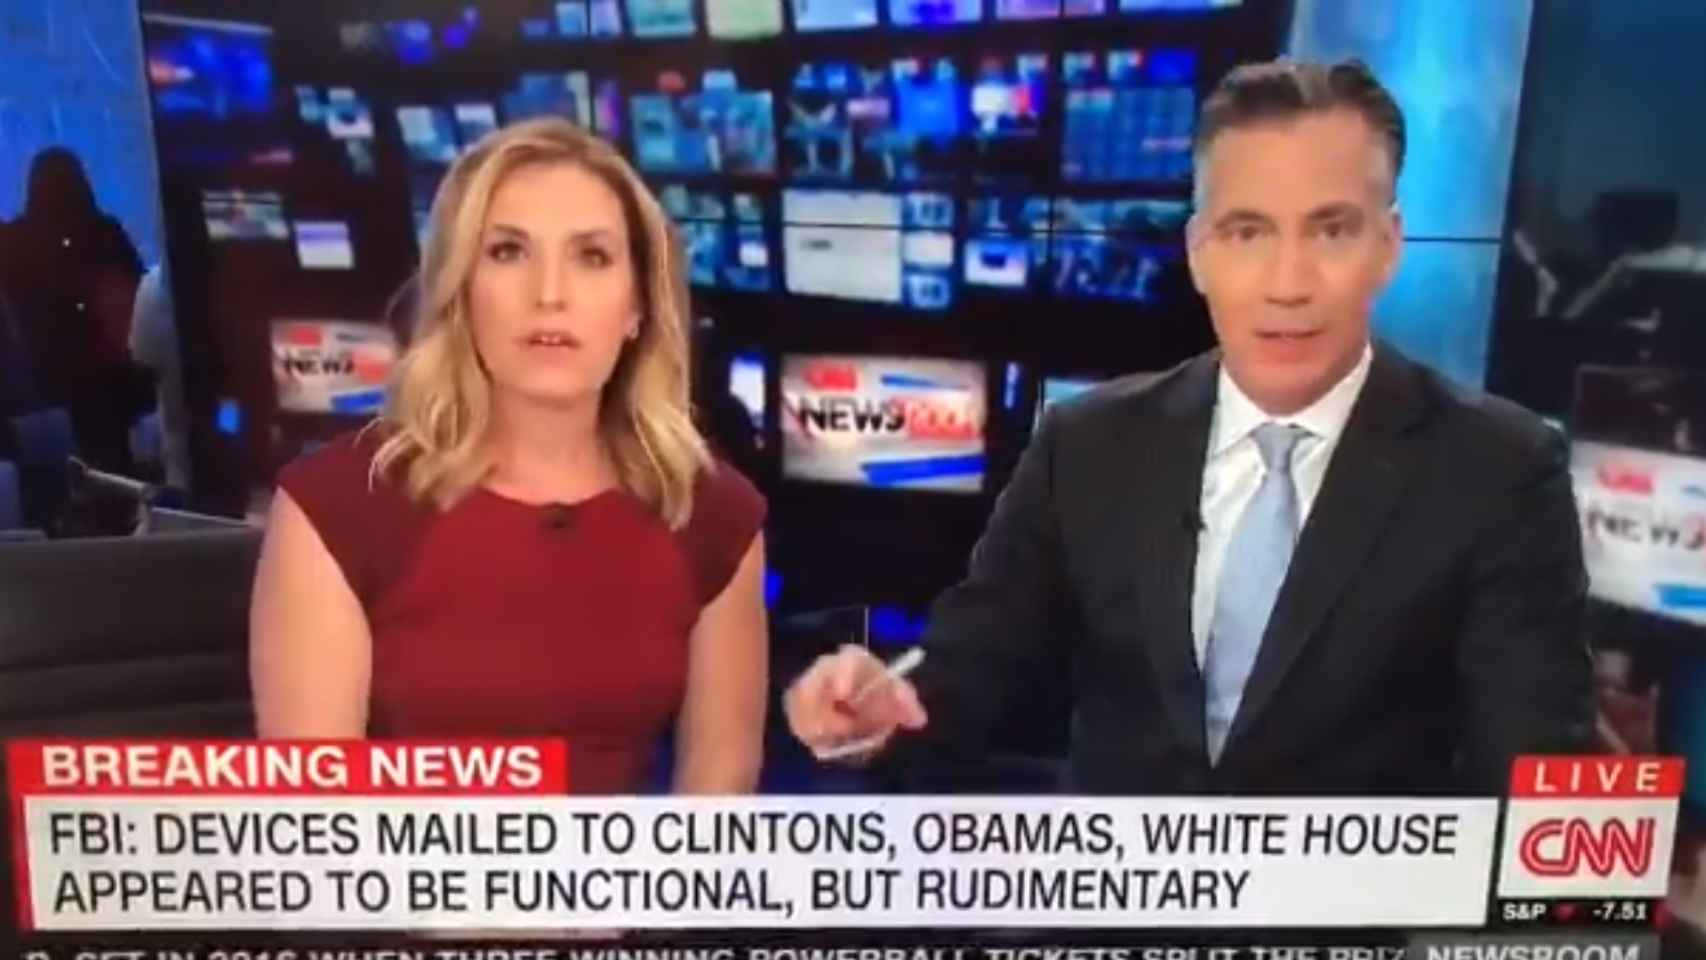 Momento en el que CNN interrumpe su directo por amenaza de bomba.